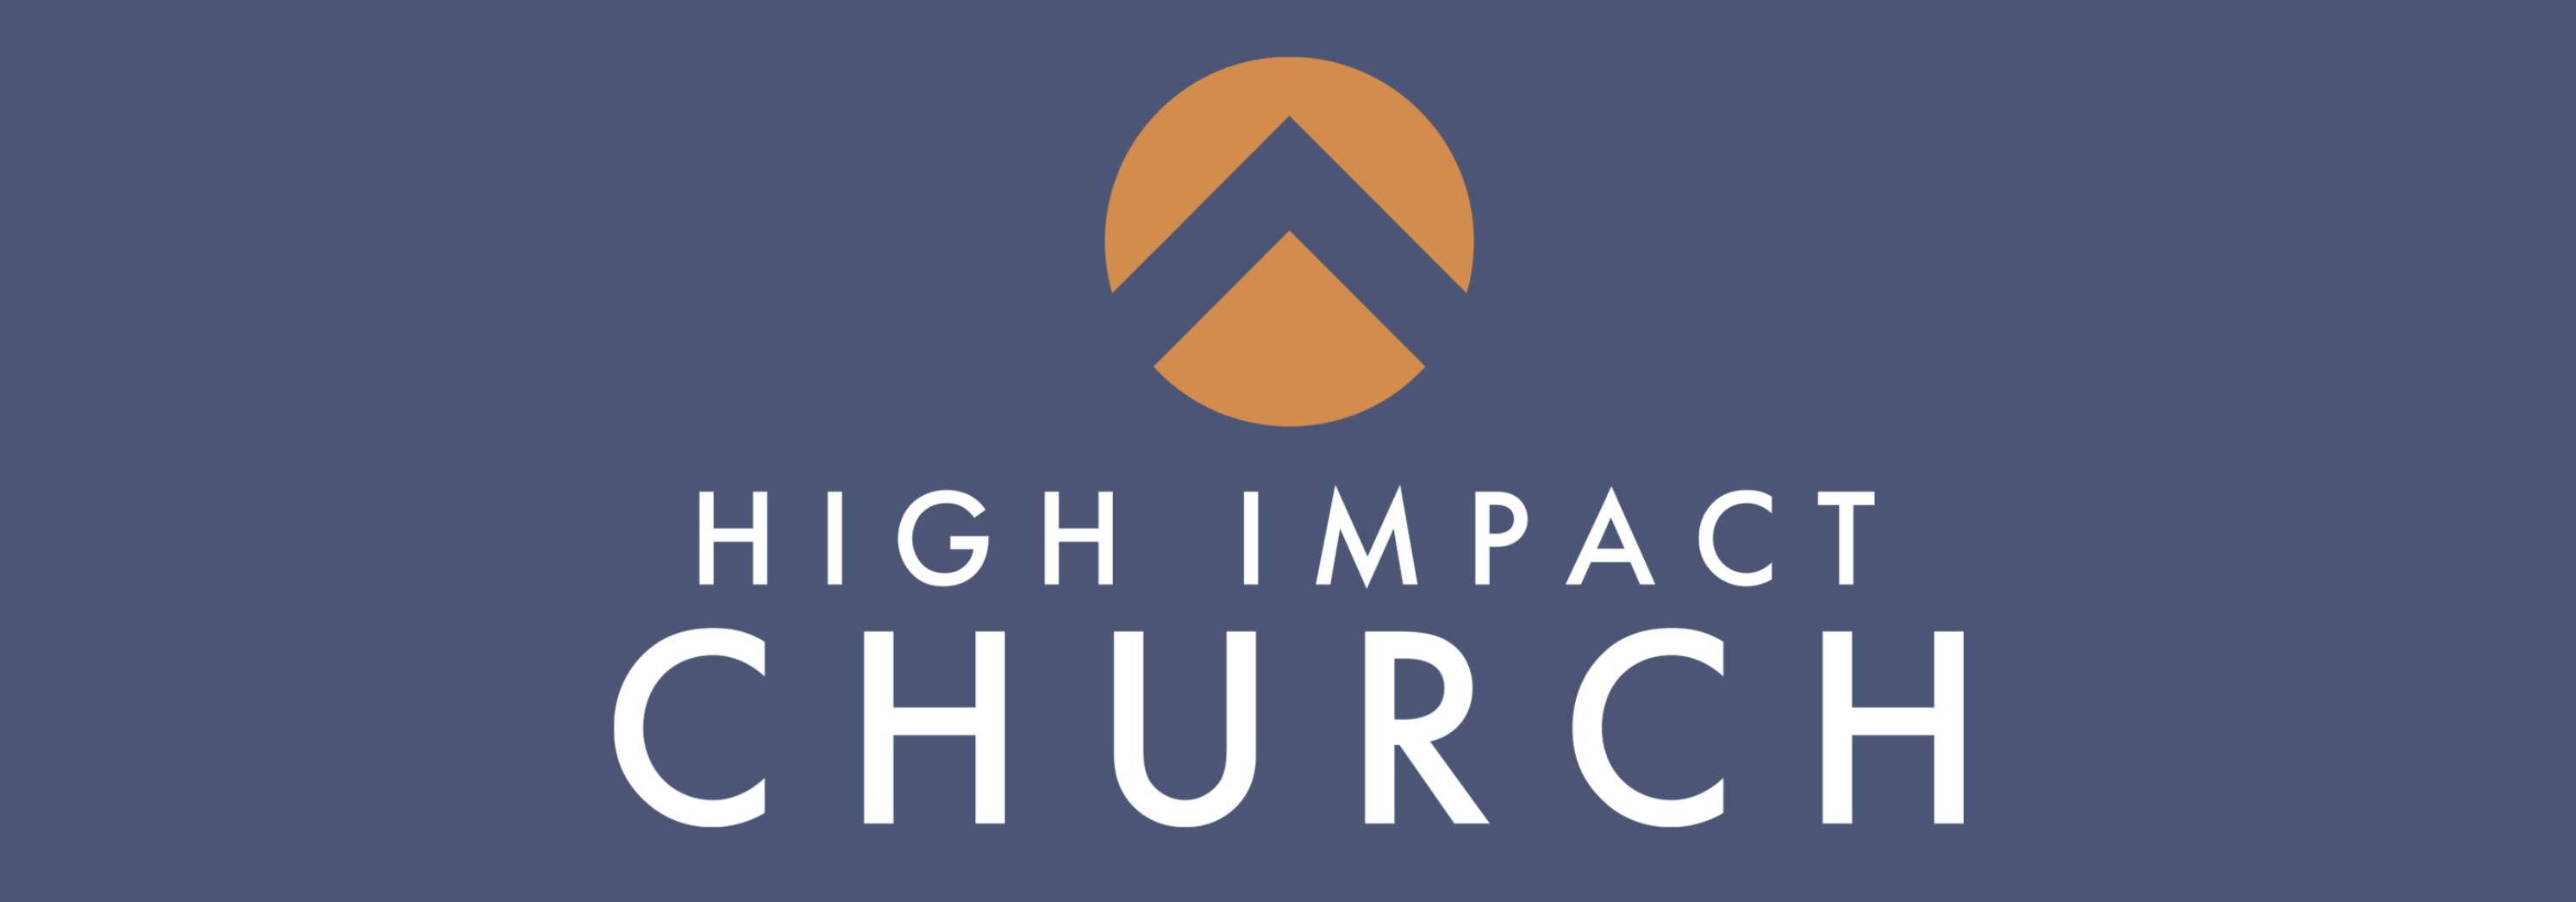 Global High Impact Church banner 2988x1046